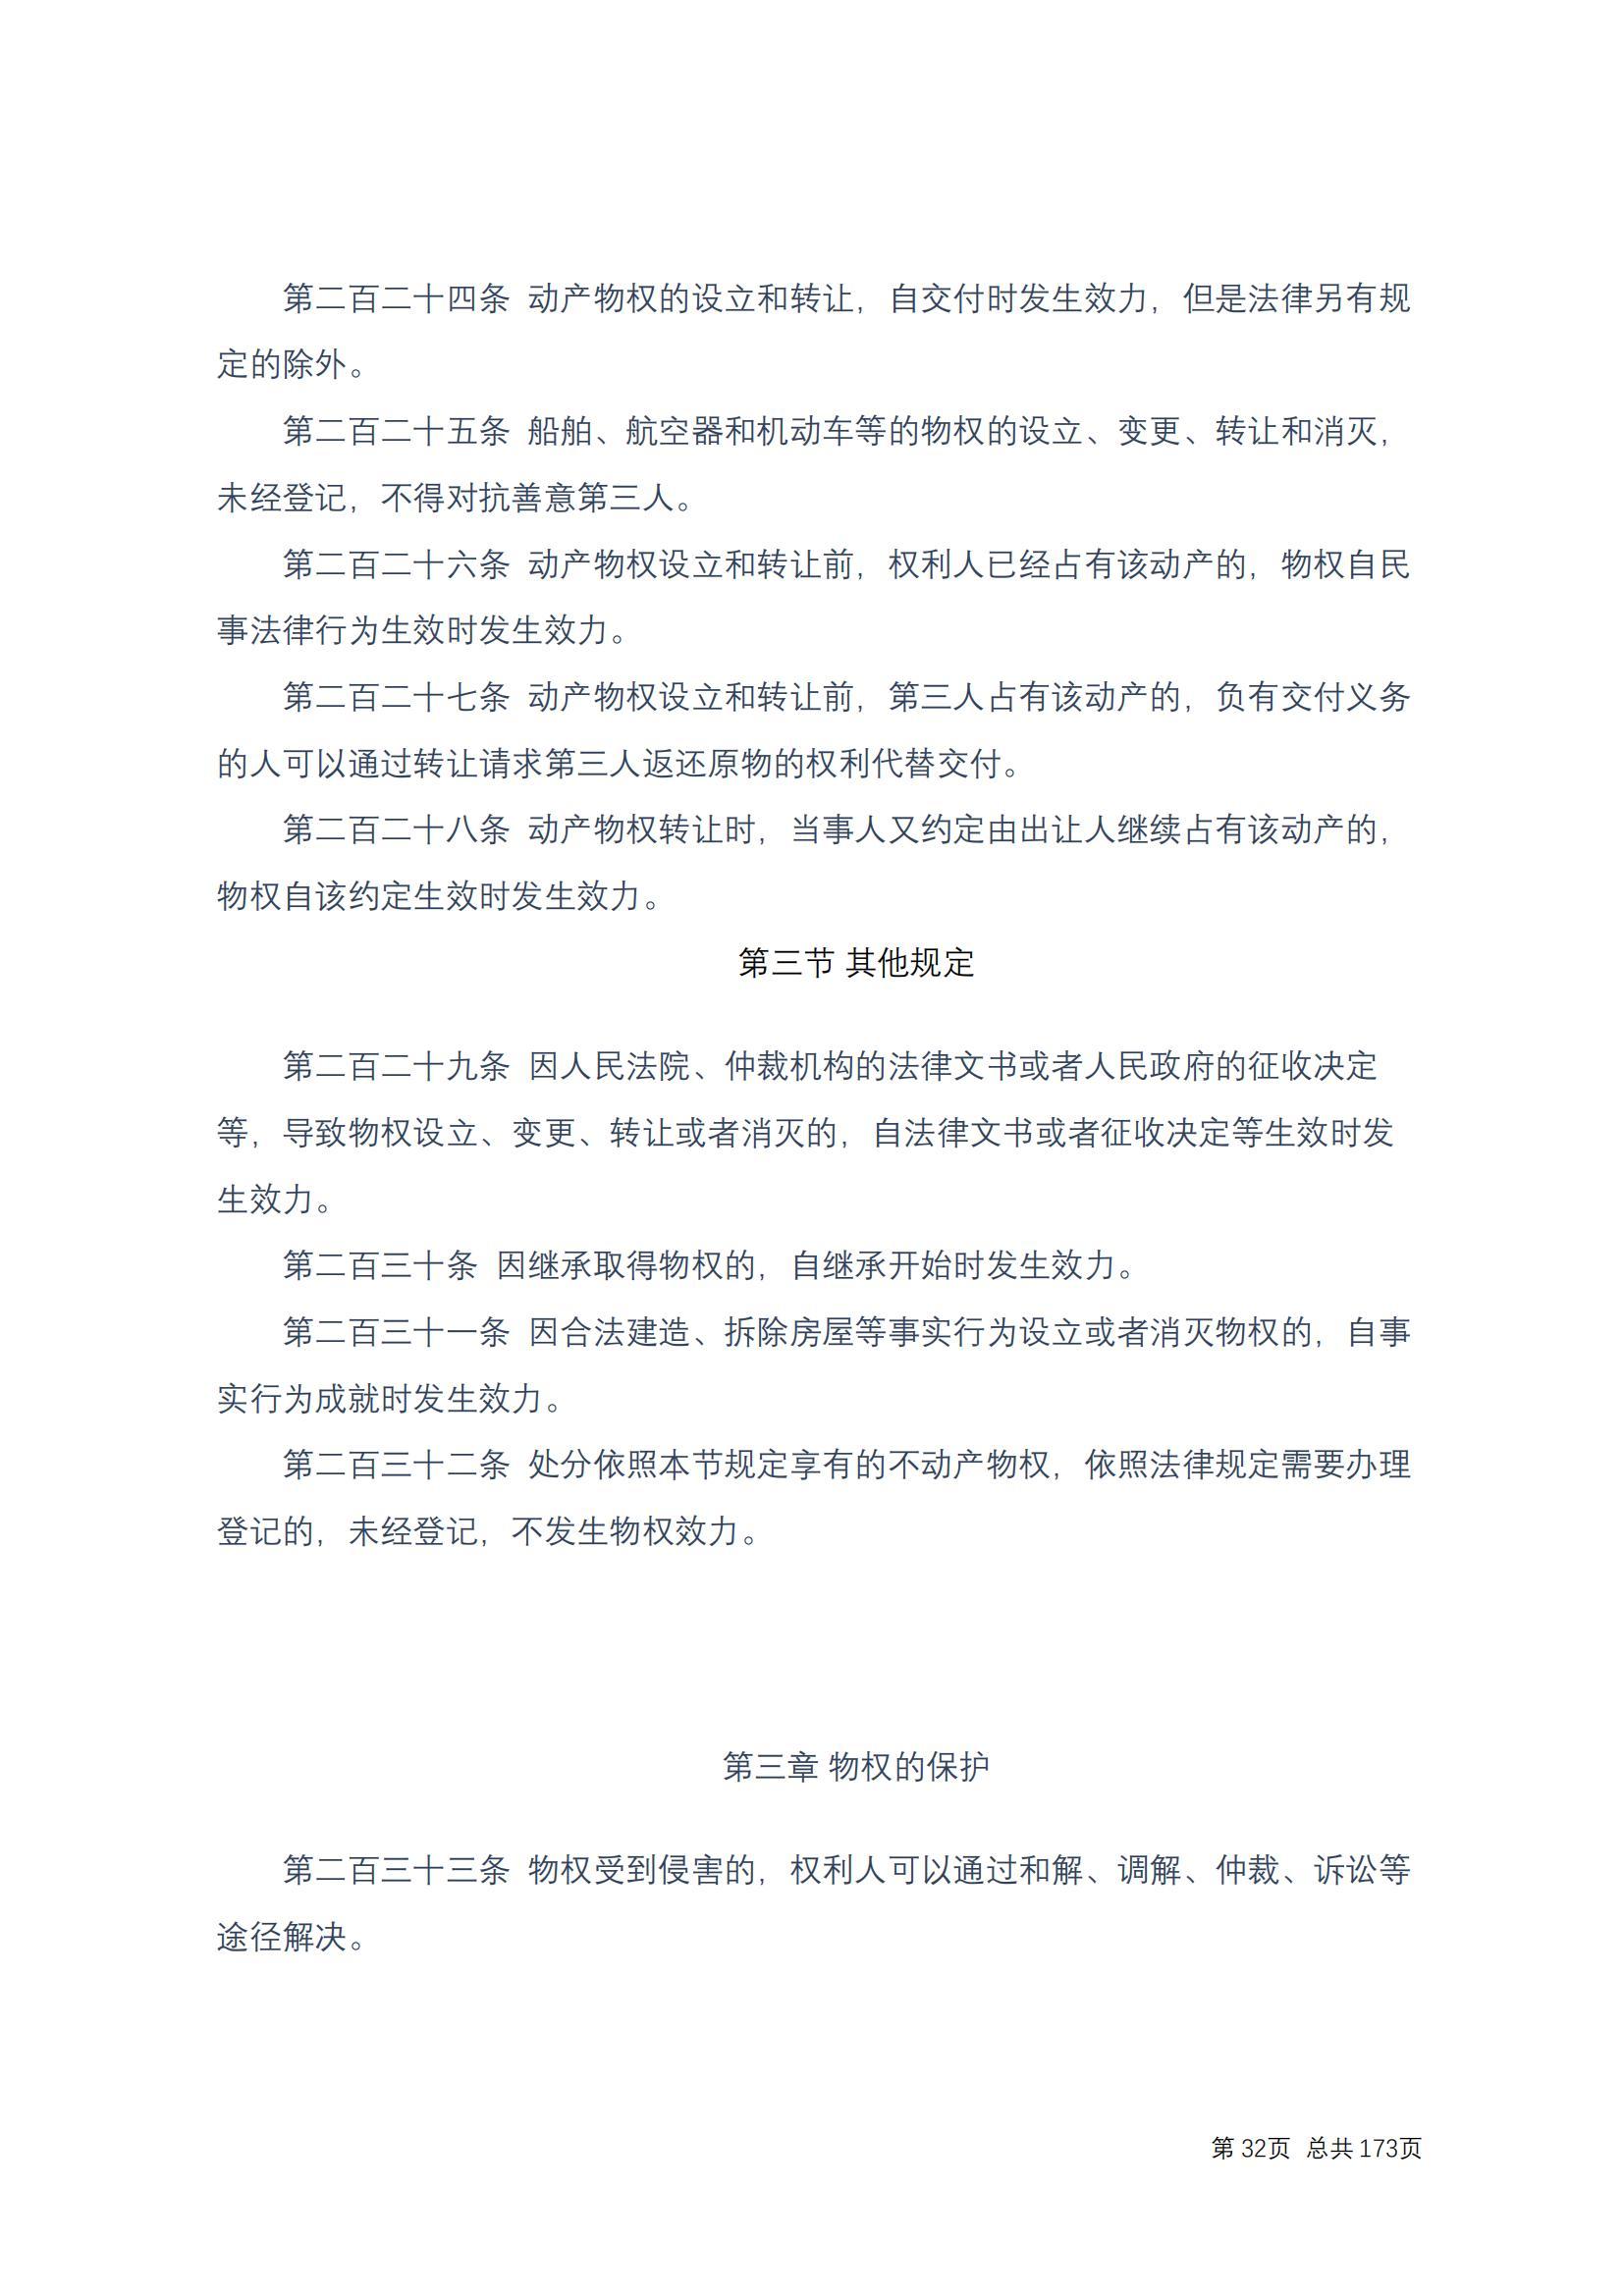 中华人民共和国民法典 修改过_31